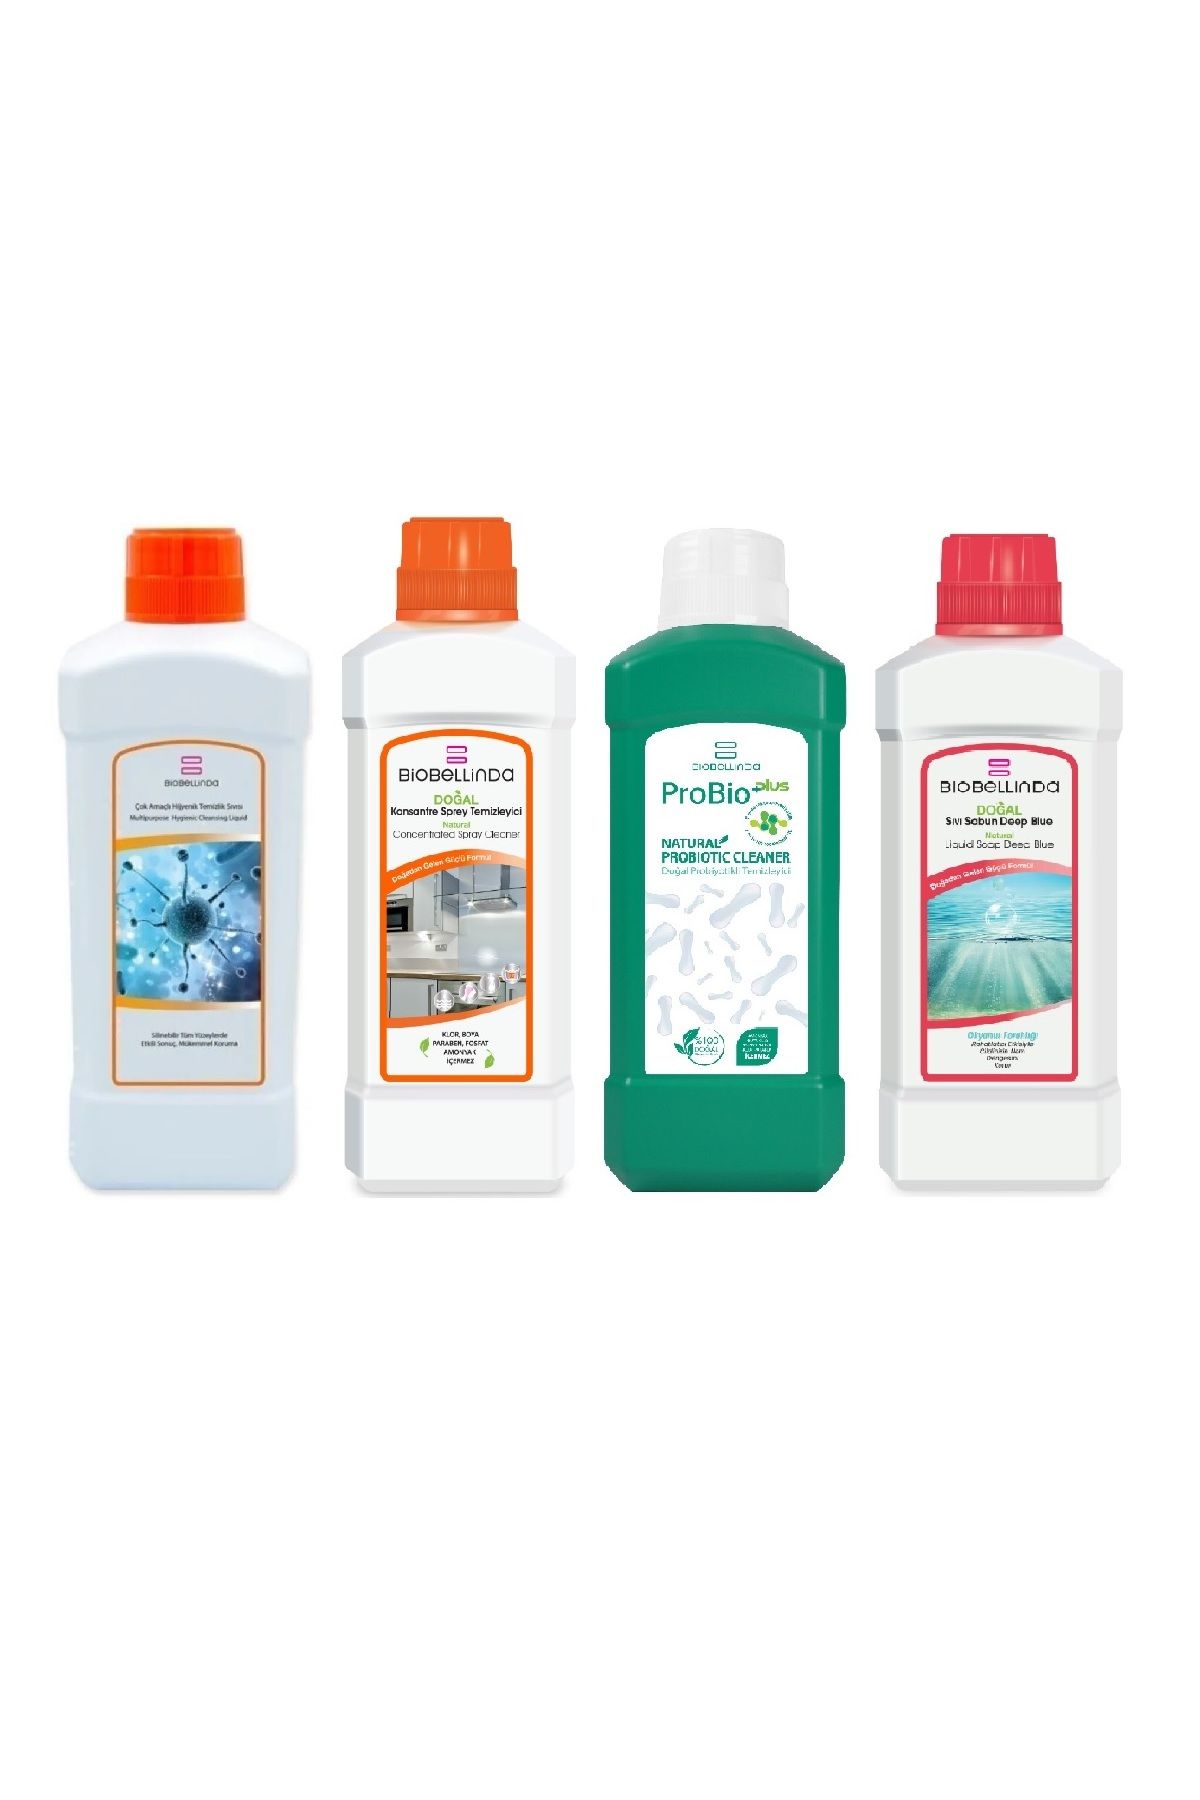 BioBellinda Sıvı el sabunu Deep Blue + Probioplus + Çok Amaçlı Temizleyici + Konsantre Sprey Temizleyici